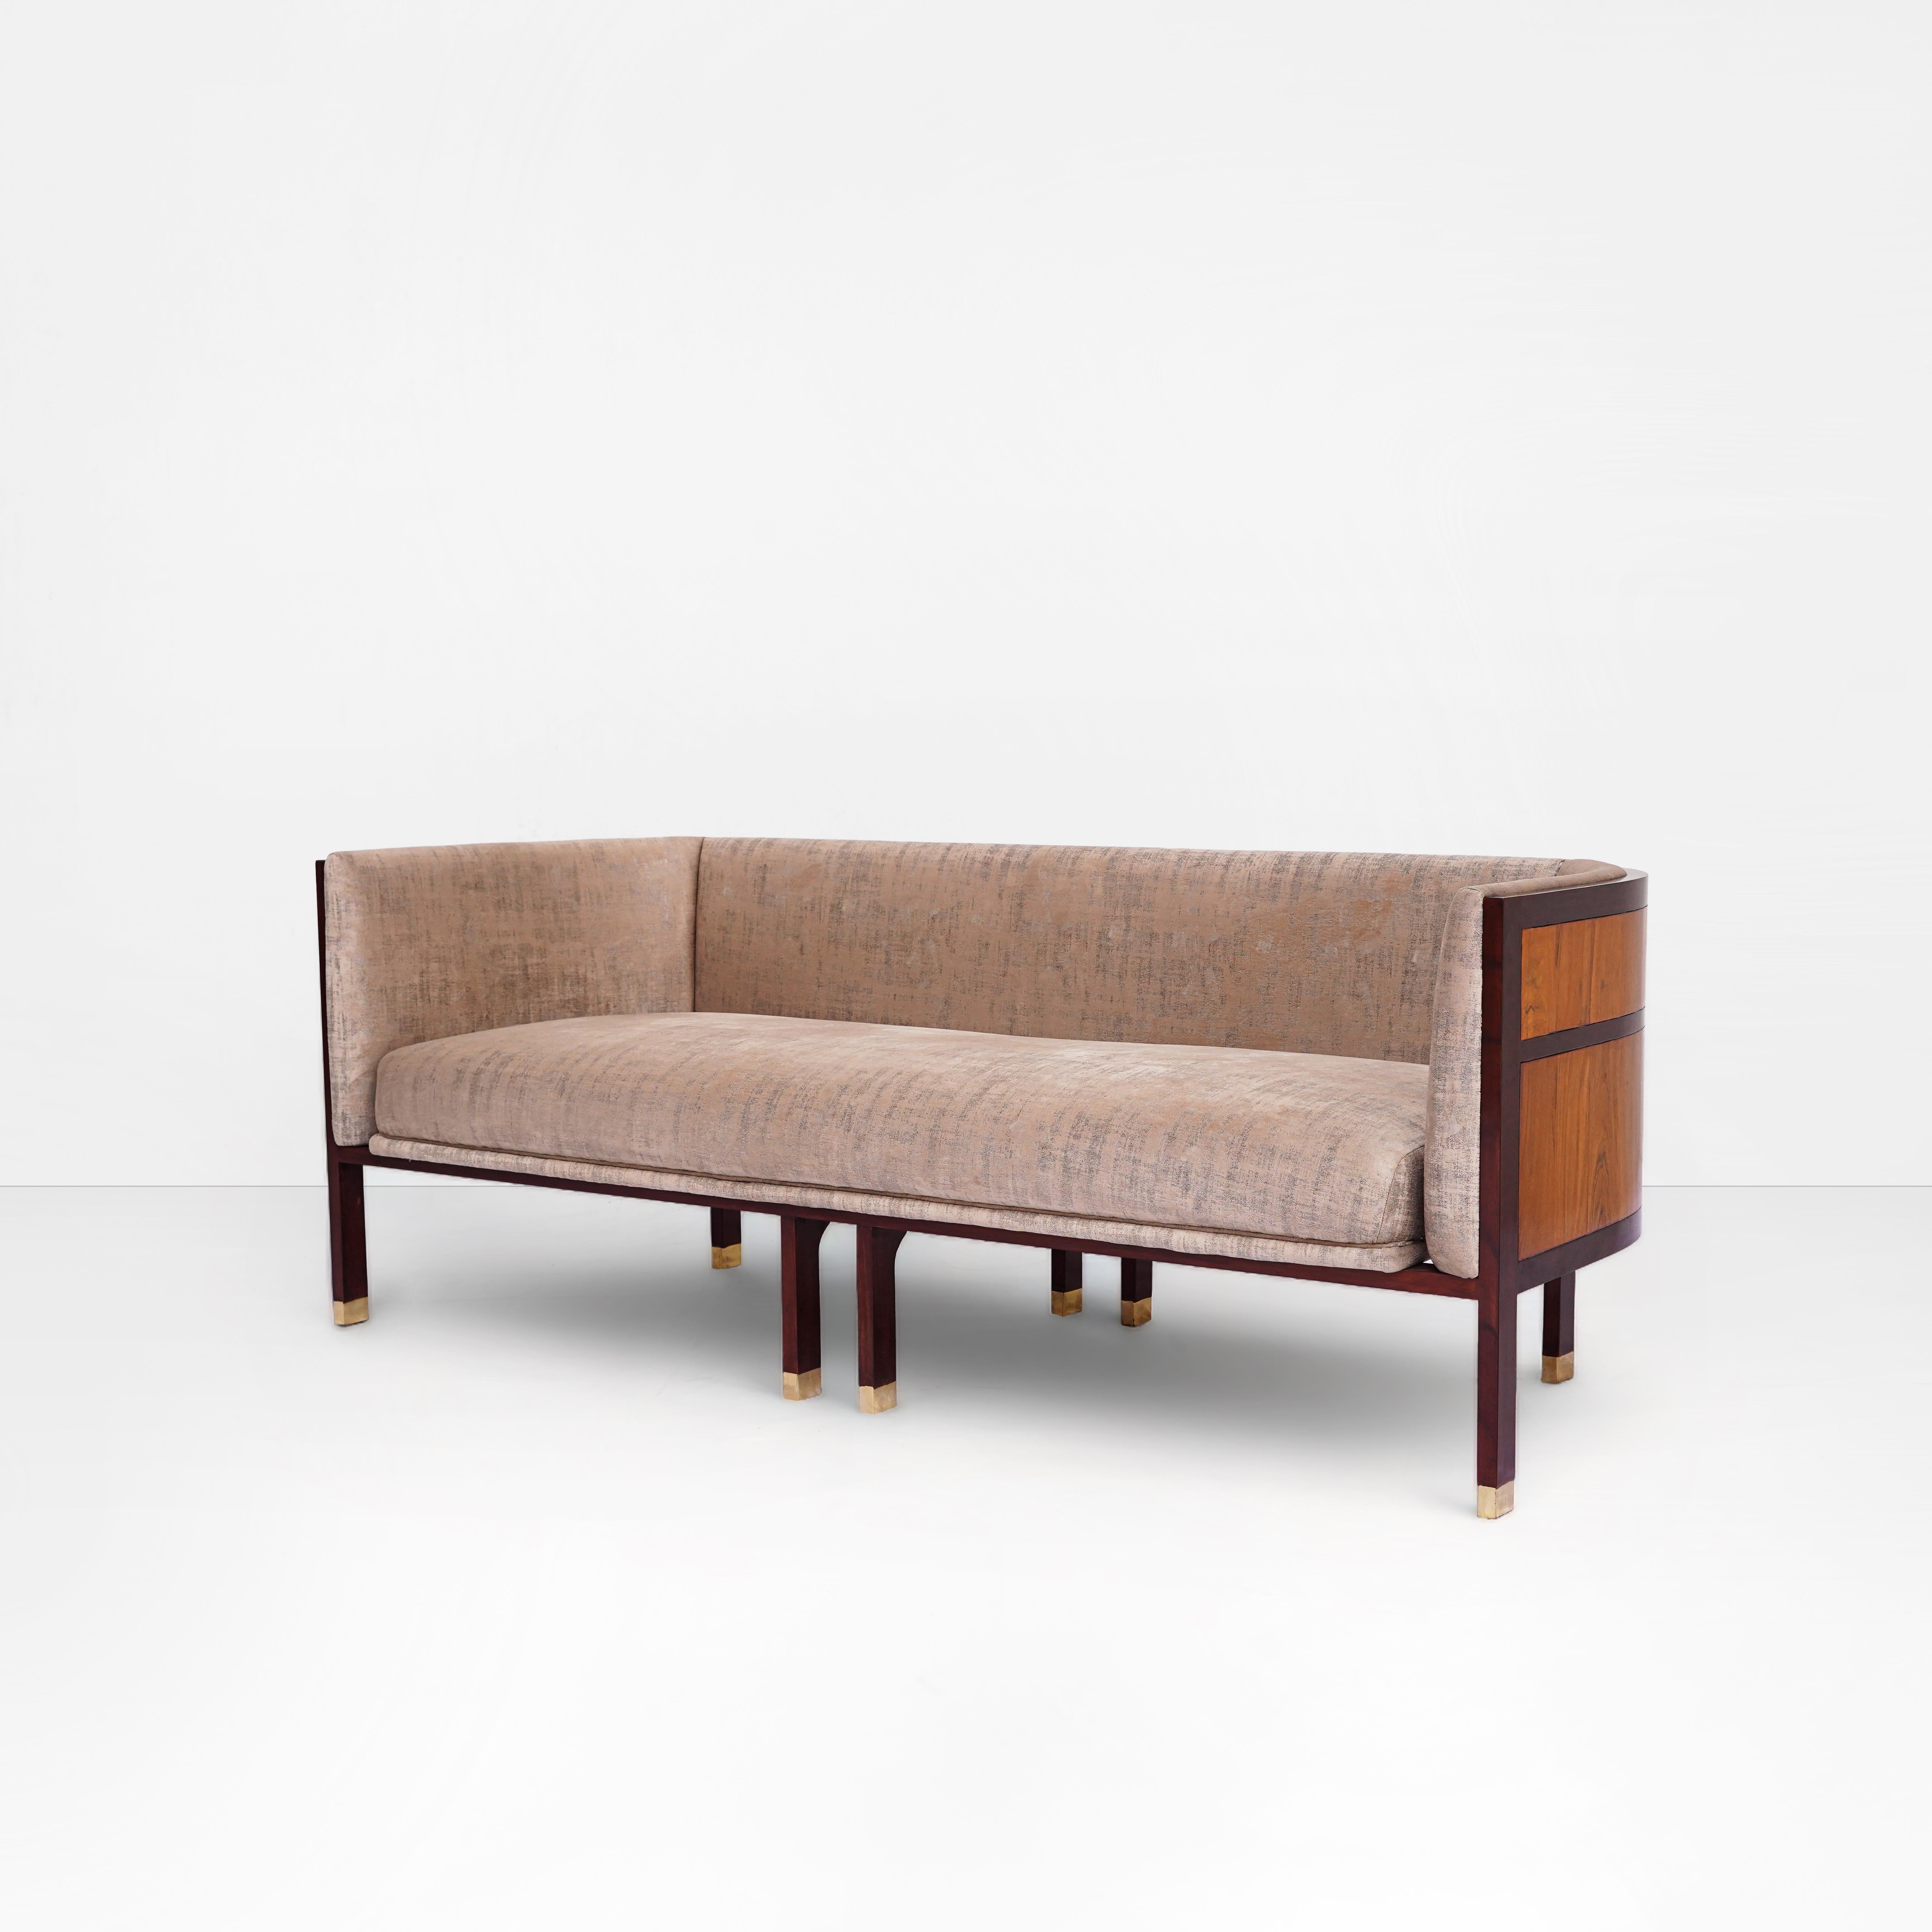 Erleben Sie die zeitlose Eleganz von Erete: Ein modernes, kühnes Barrel Back Sofa mit einem originellen Design

Lassen Sie sich von Erete verführen, einem kühnen und exquisit gefertigten Sofa mit Tonnenrücken, das die moderne Ästhetik der